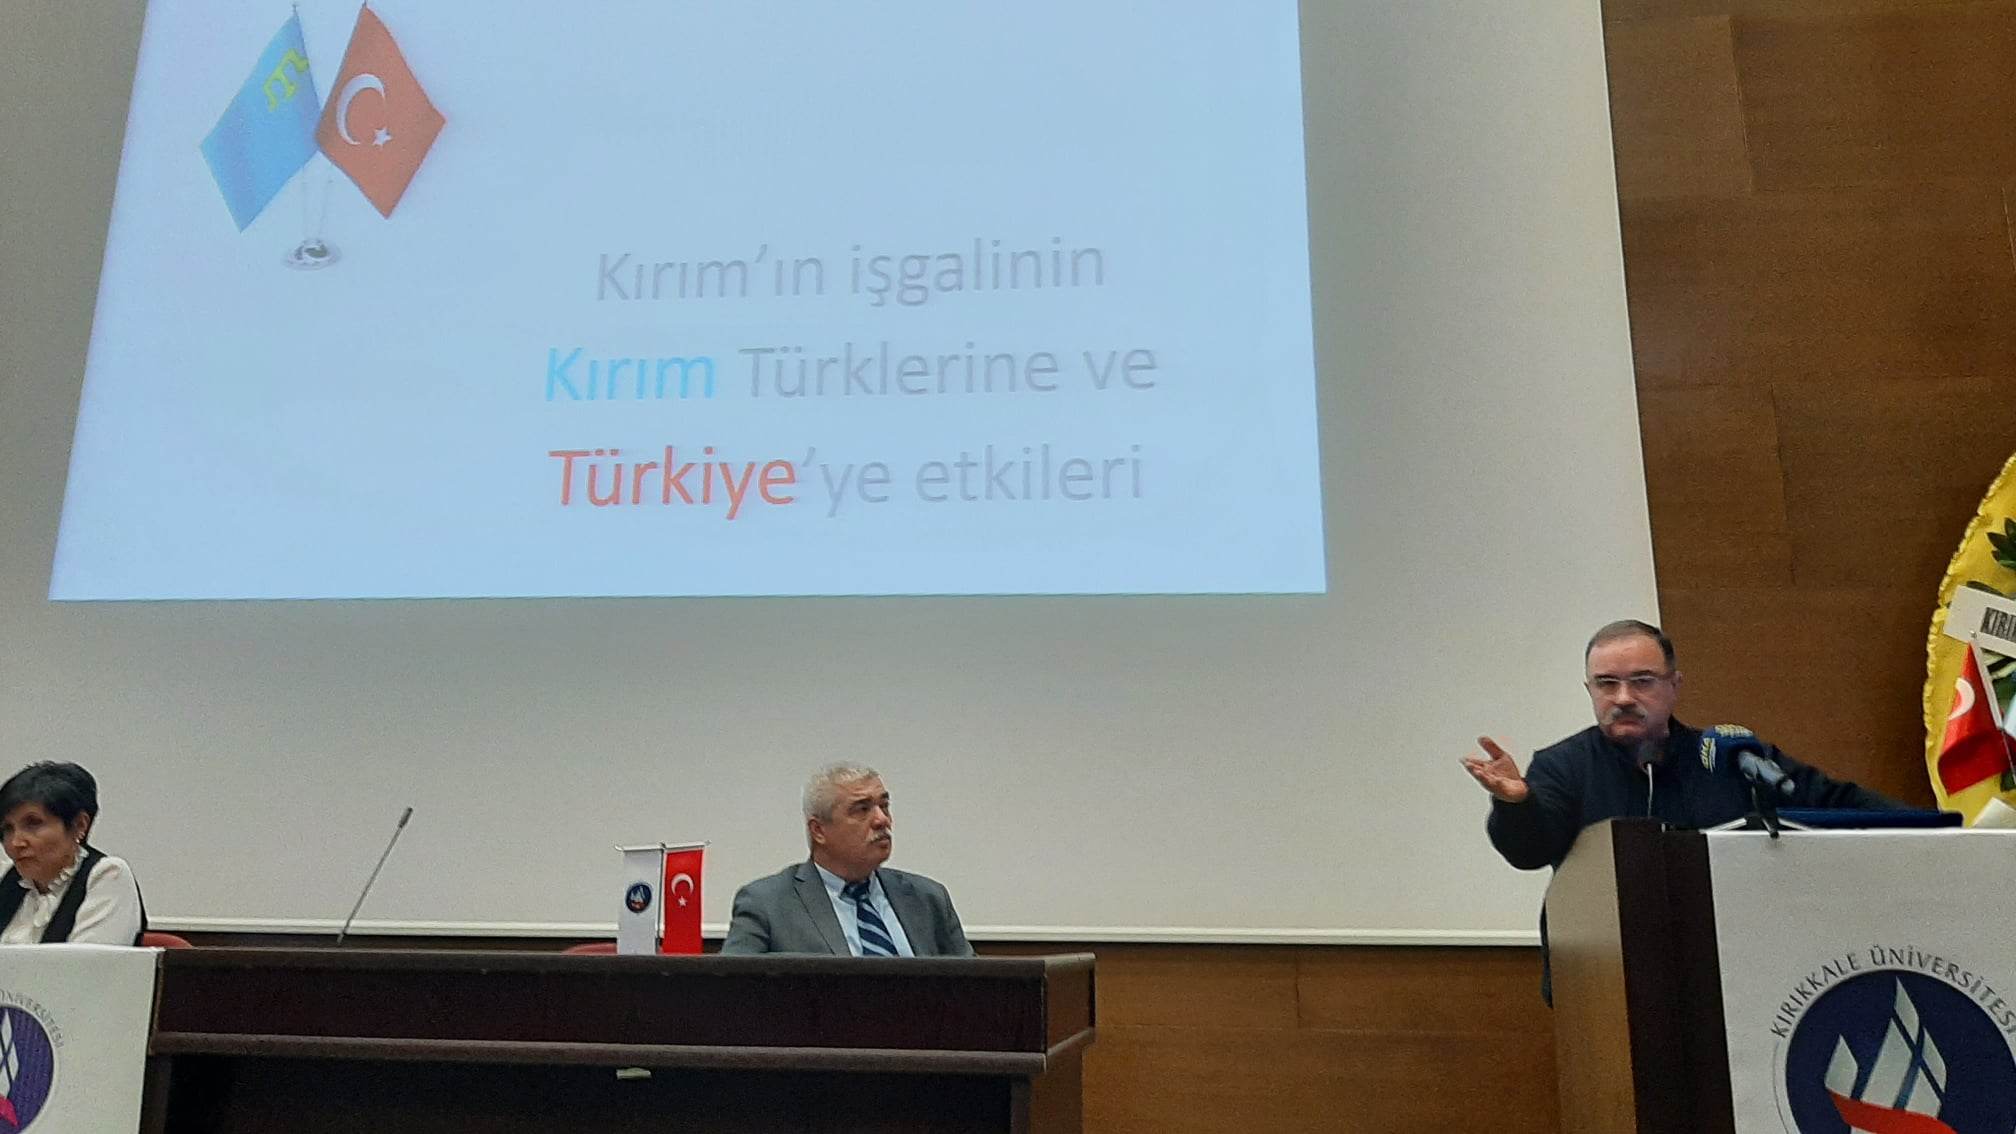 Kırıkkale Üniversitesi’nde Kırım Konulu Panel Düzenlendi